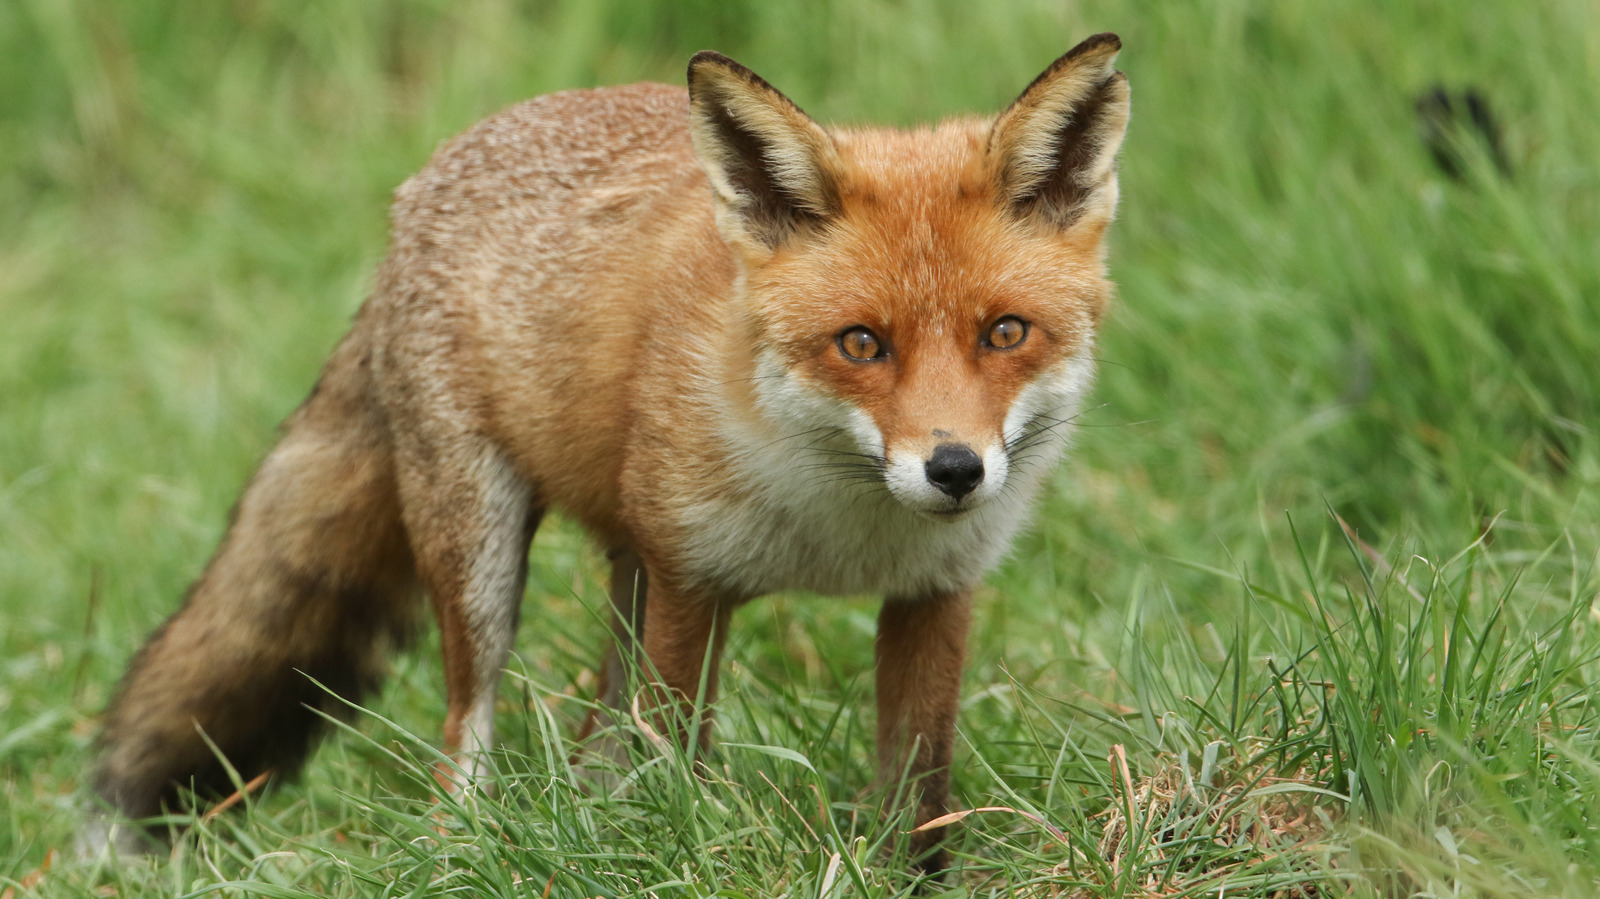 K fox. Зрачок лисы. Красная лисица. Лиса в траве. Лисица ЛО.